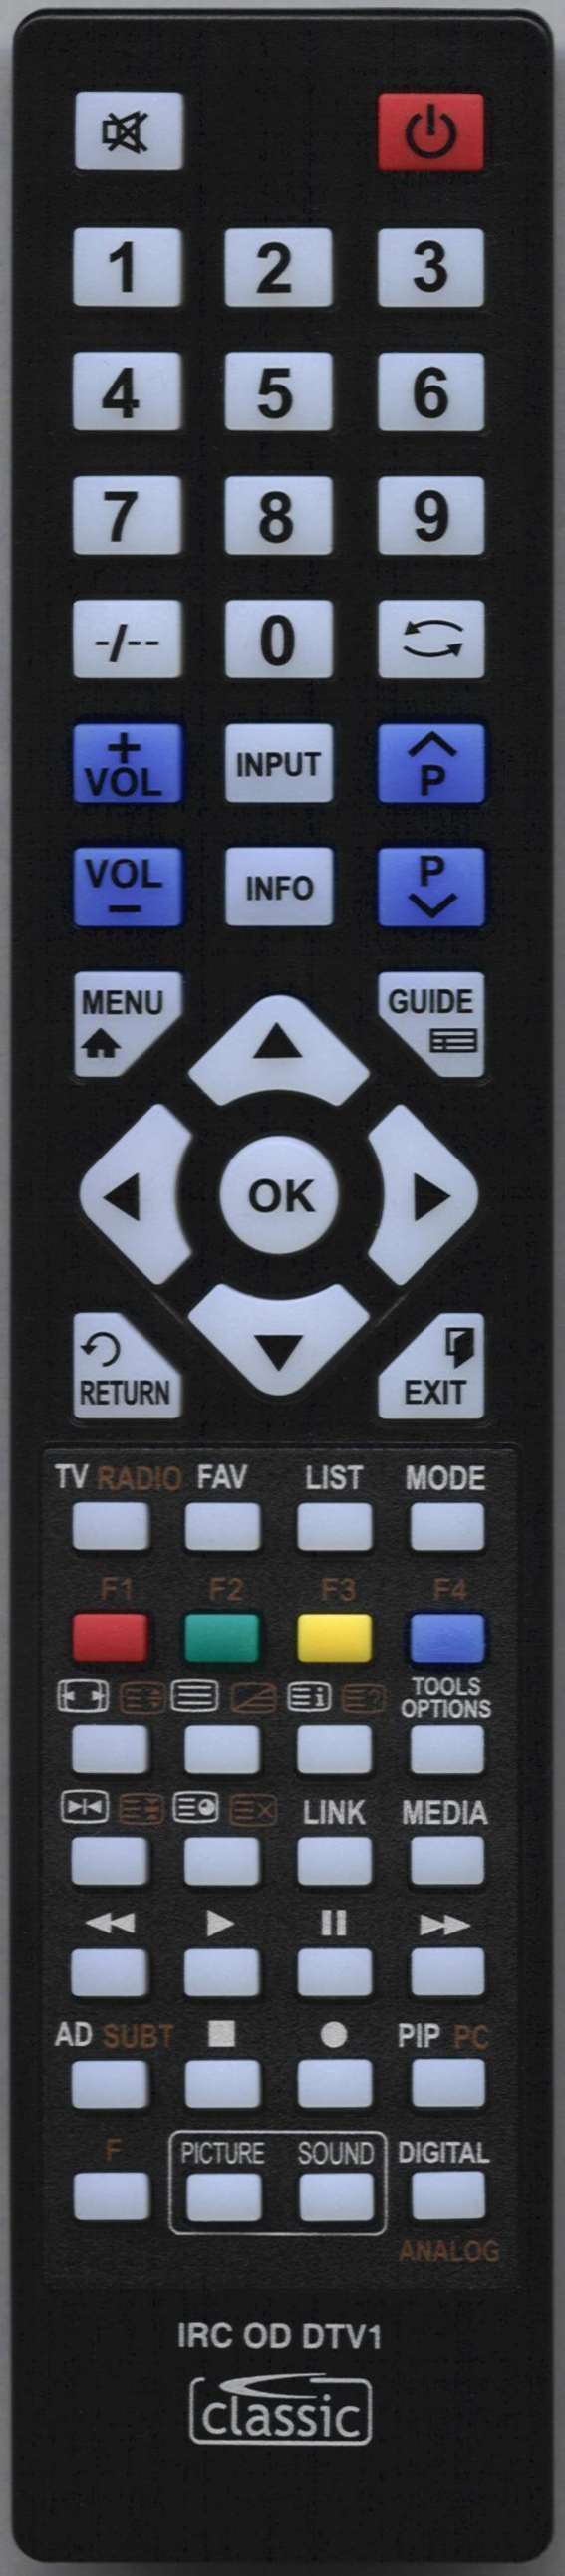 LUXOR 10054704 Remote Control Alternative